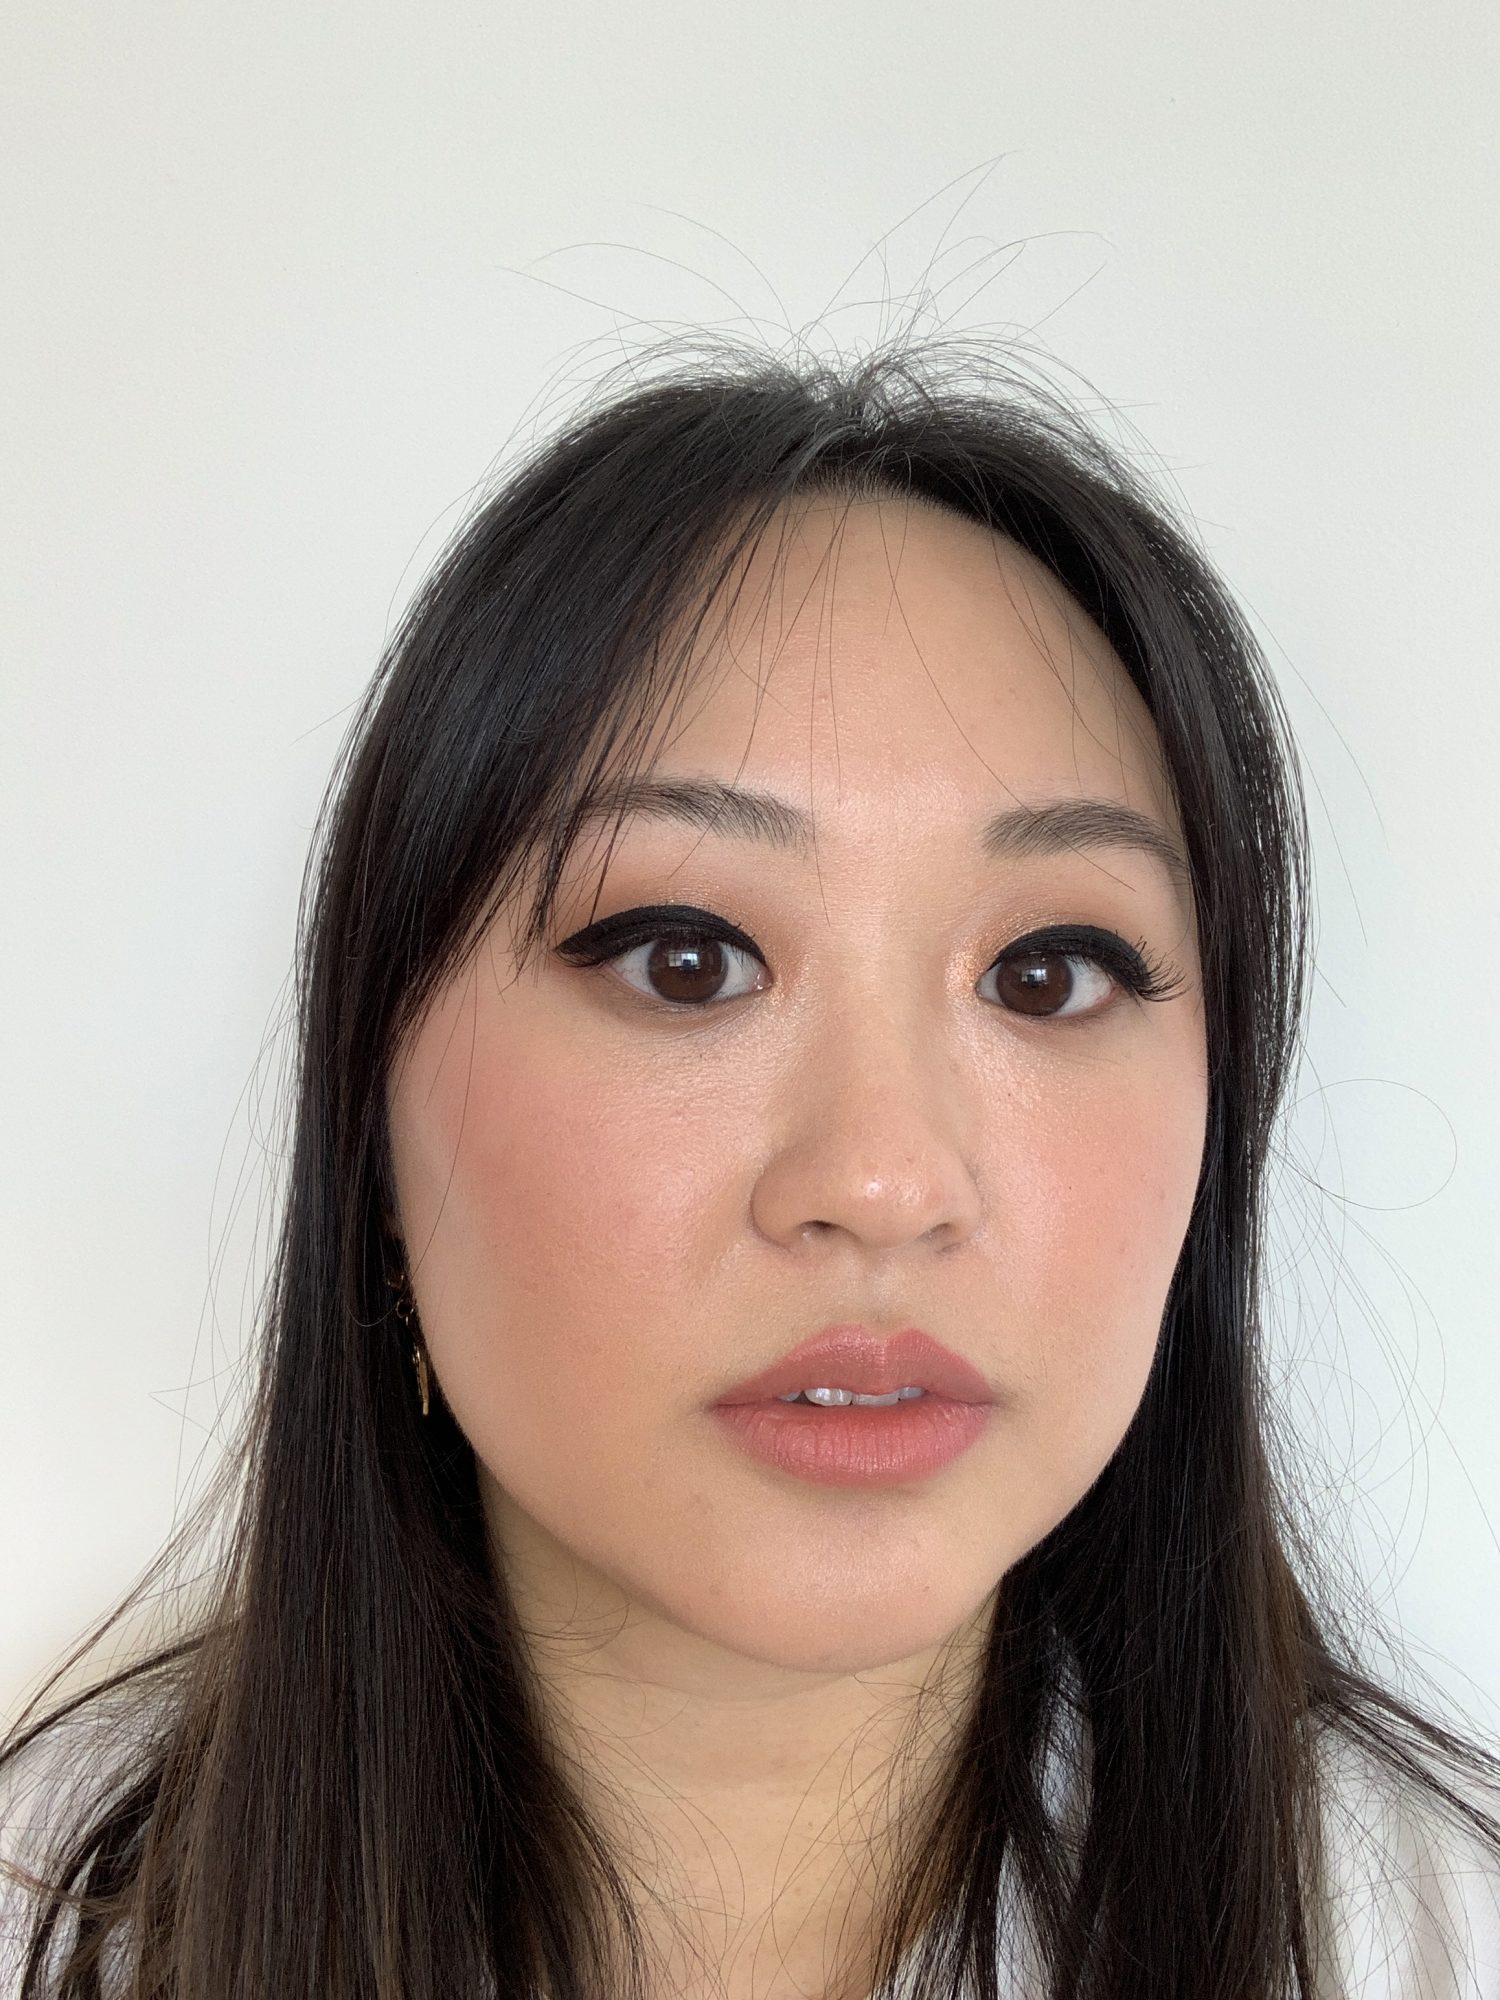 eye makeup tips for hooded eyes monolid eyeshadow eyeliner